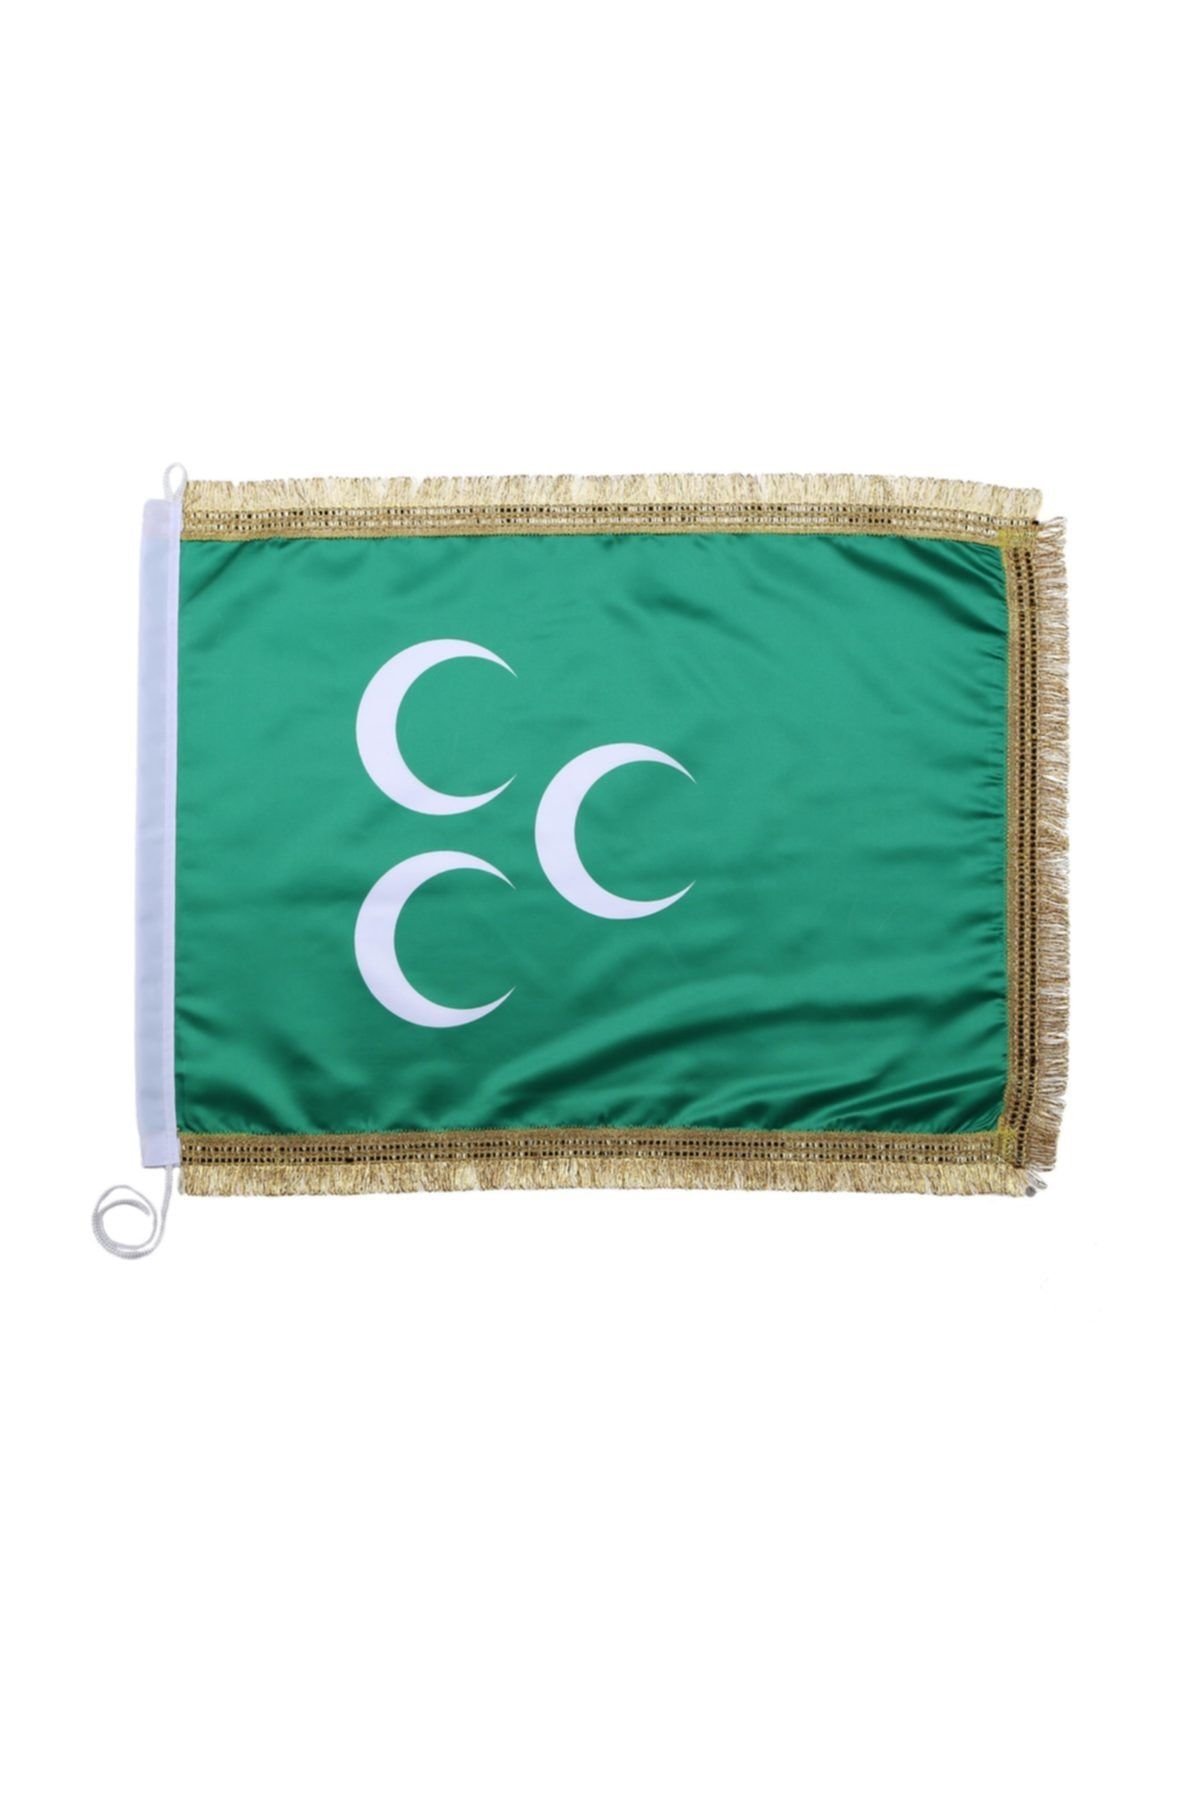 bayrakal  Yeşil Üç Hilal Bayrağı, Osmanlı Bayrağı